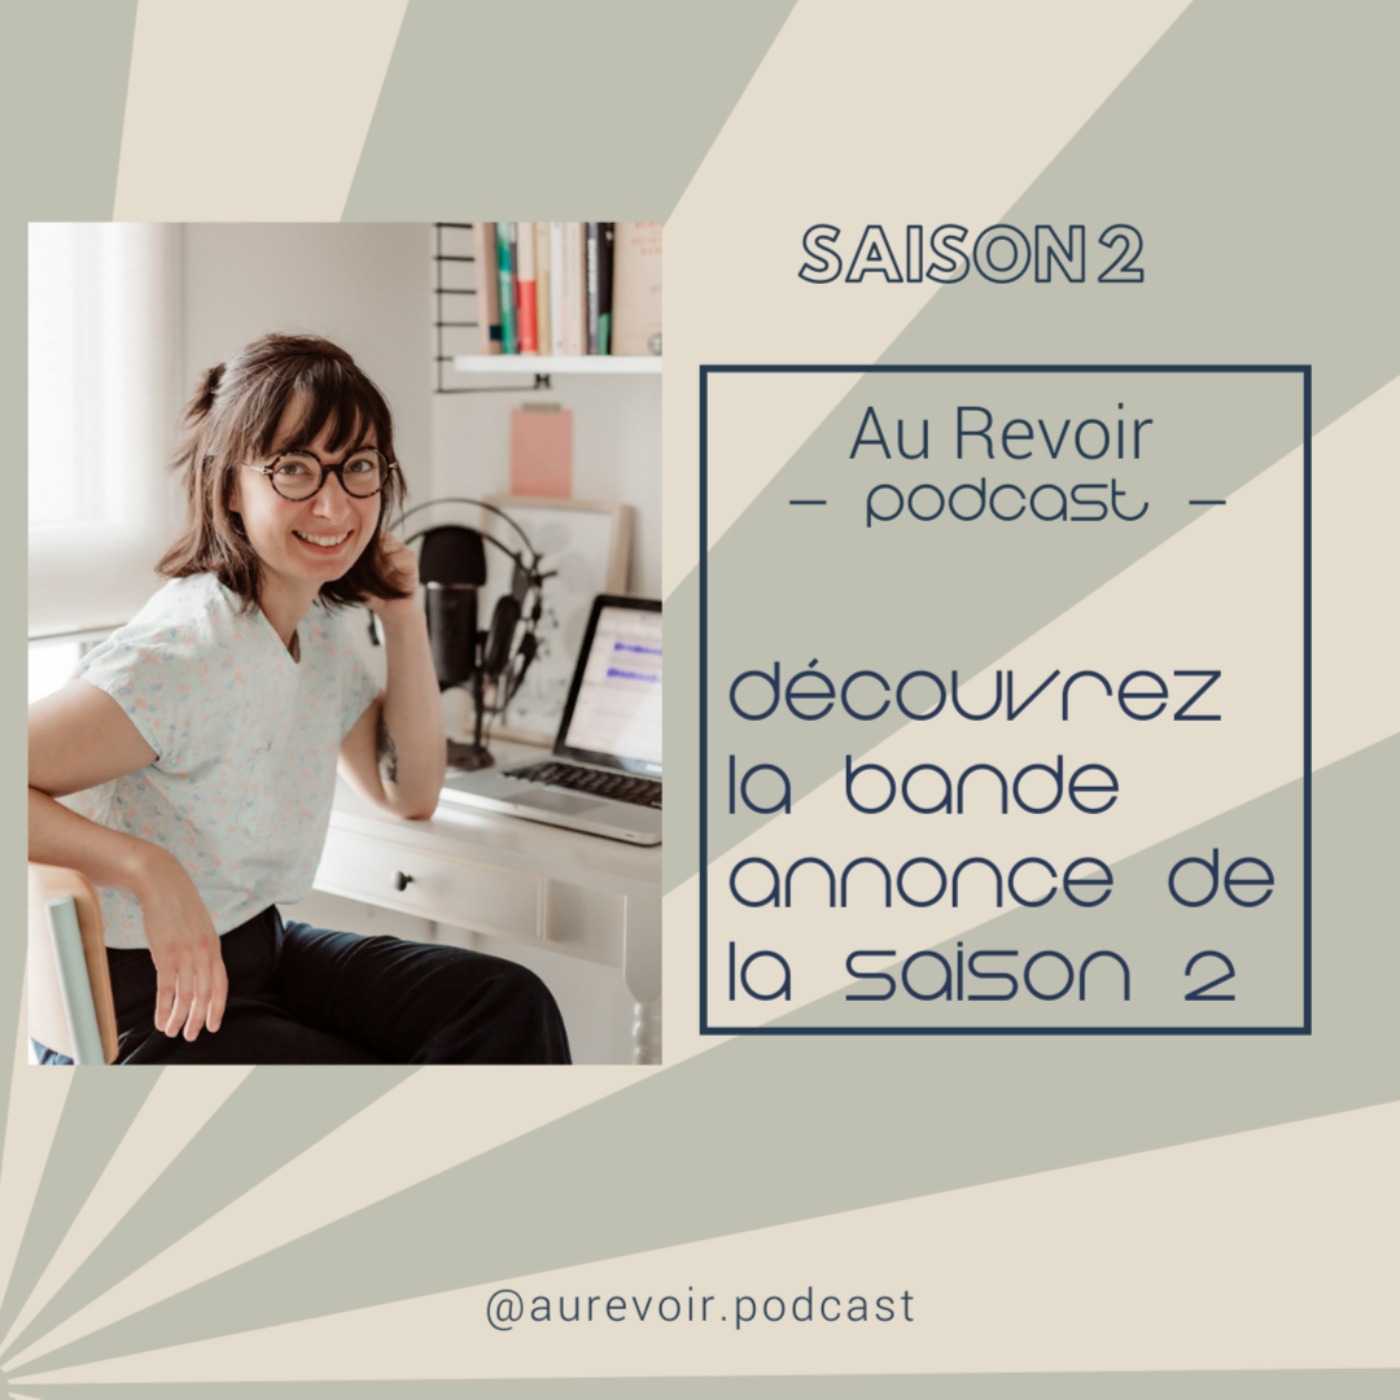 Deuil périnatal : la bande annonce de la saison 2 d’Au Revoir Podcast